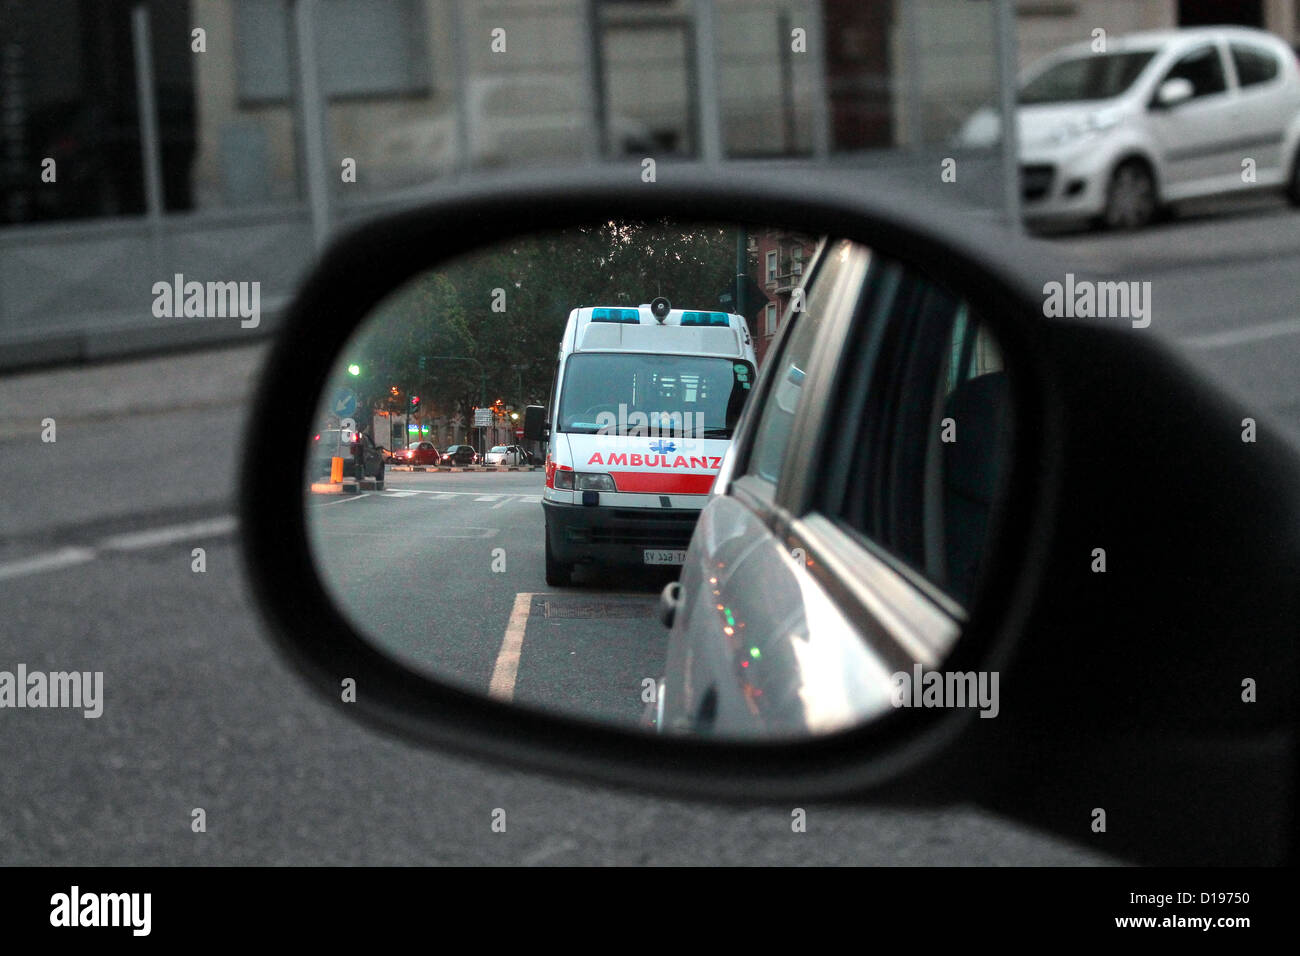 ambulance-in-the-rearview-mirror-ambulanza-nello-specchietto-retrovisore-D19750.jpg